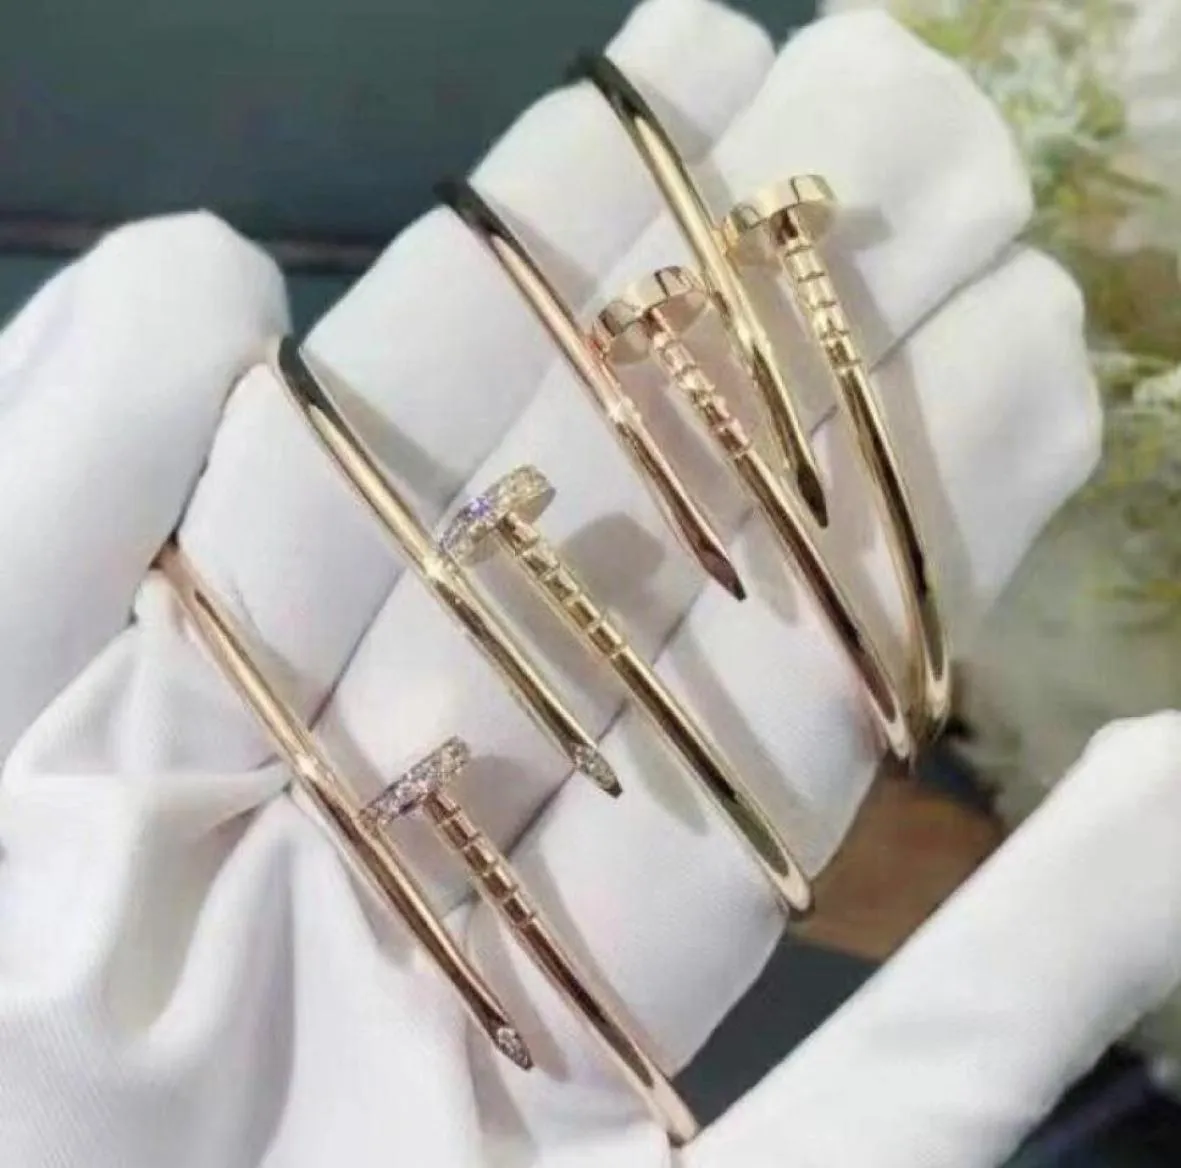 Ladies Luxus Glamour Gold Charme Armband Klassiker Nagel Bangle Unisex Valentine Day Hochzeit Geschenk 18k Gold Schmuck Edelstahl 3985449